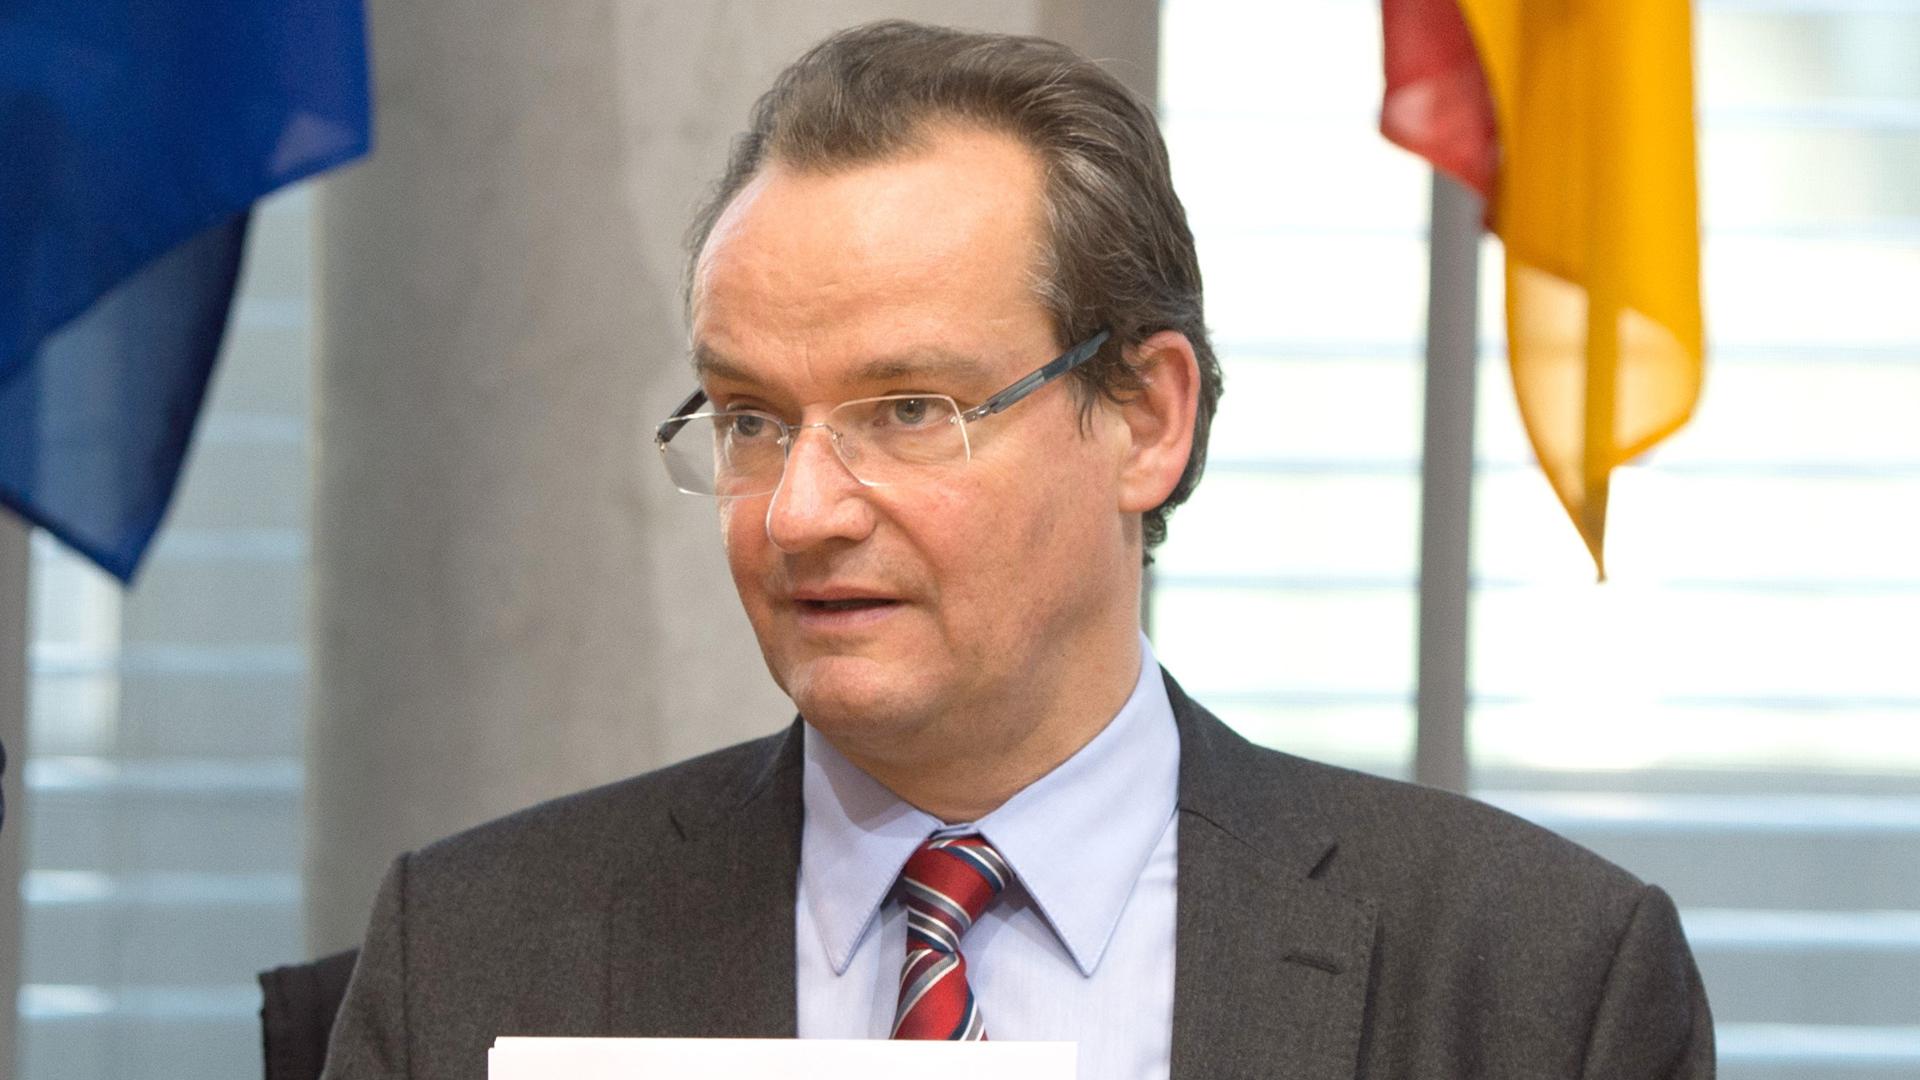 Der Ausschuss-Vorsitzende Gunther Krichbaum (CDU) bereitet sich am 02.11.2015 in Berlin auf die Sitzung des Europaausschusses zur Vollendung der Wirtschafts- und Währungsunion Europas vor. Foto: Soeren Stache/dpa ++ +++ dpa-Bildfunk +++